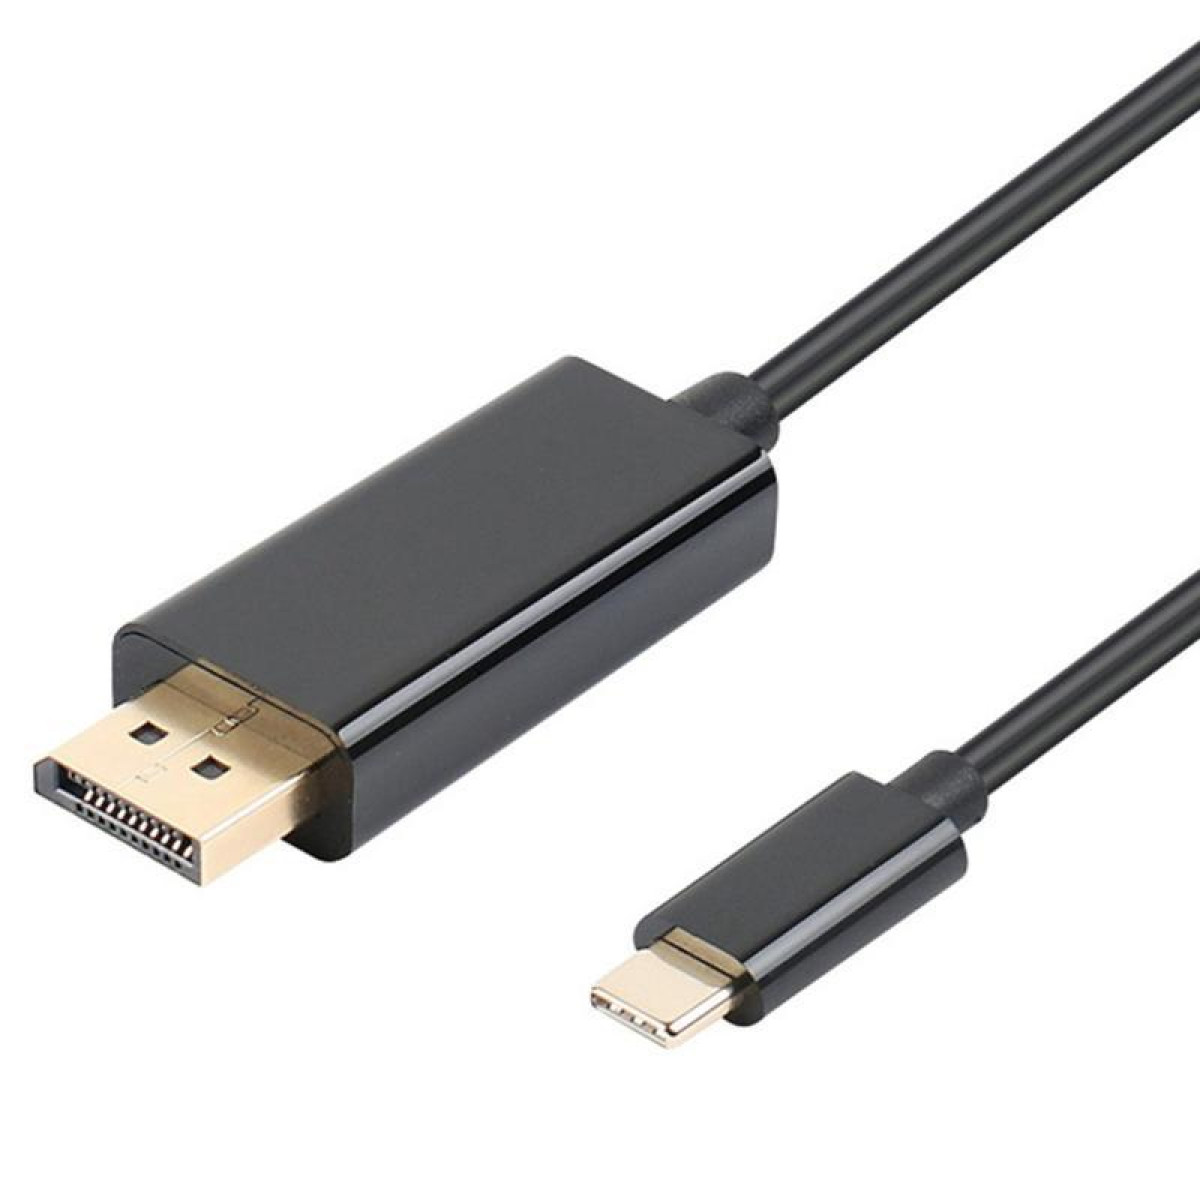 INF USB-C zu 4K Adapter USB-C (1,8 (DP) DisplayPort schwarz, kabel m)